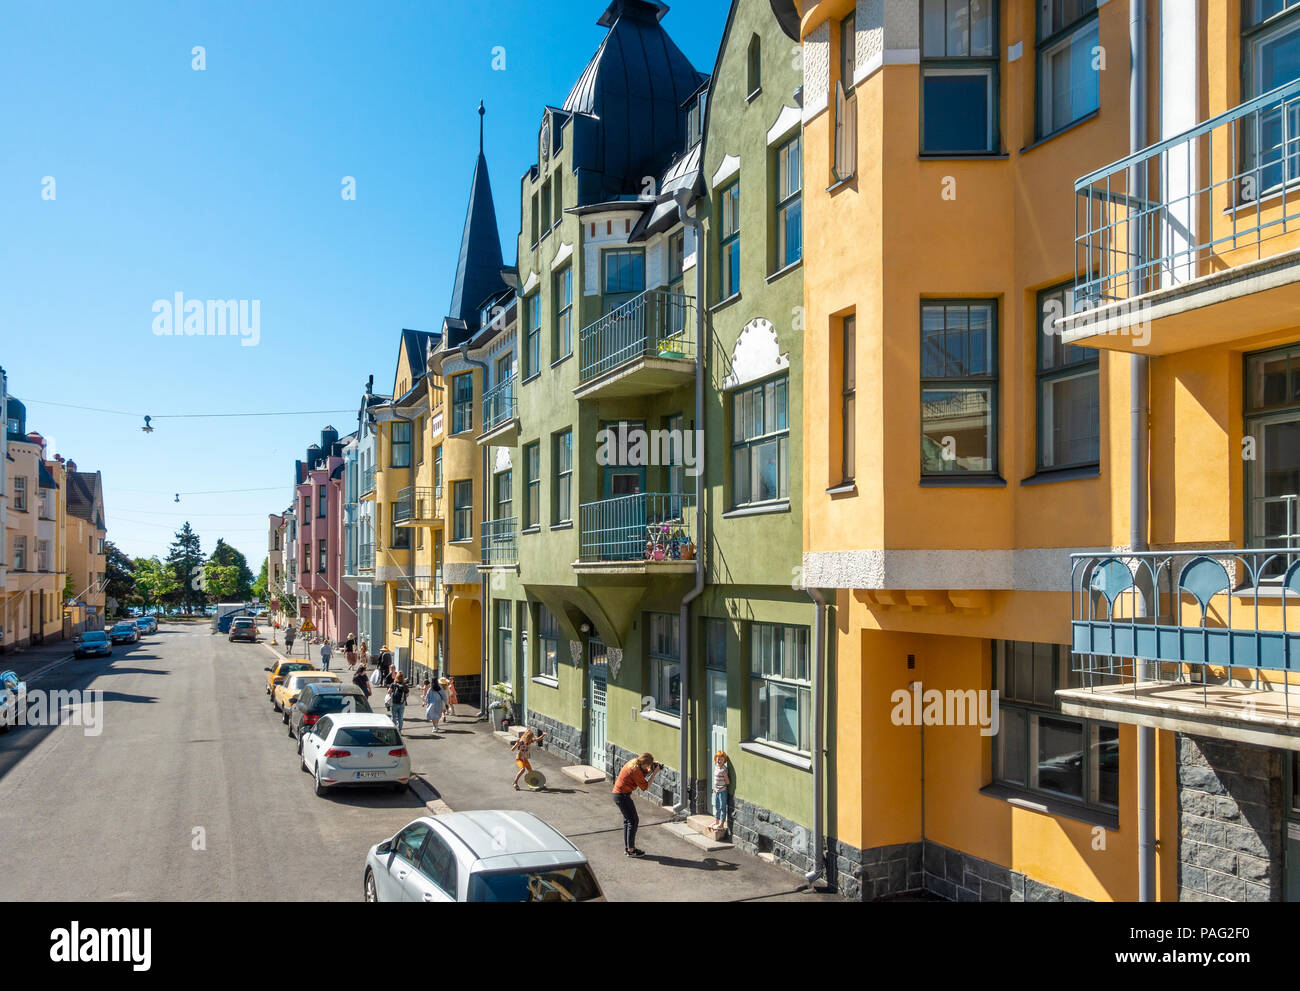 Helsinki bunte Häuser in Huvilakatu Straße, Helsinki, Finnland. Bunte Straße mit pastellfarbenen Jugendstil und Art Nouveau Stadtvillen Stockfoto